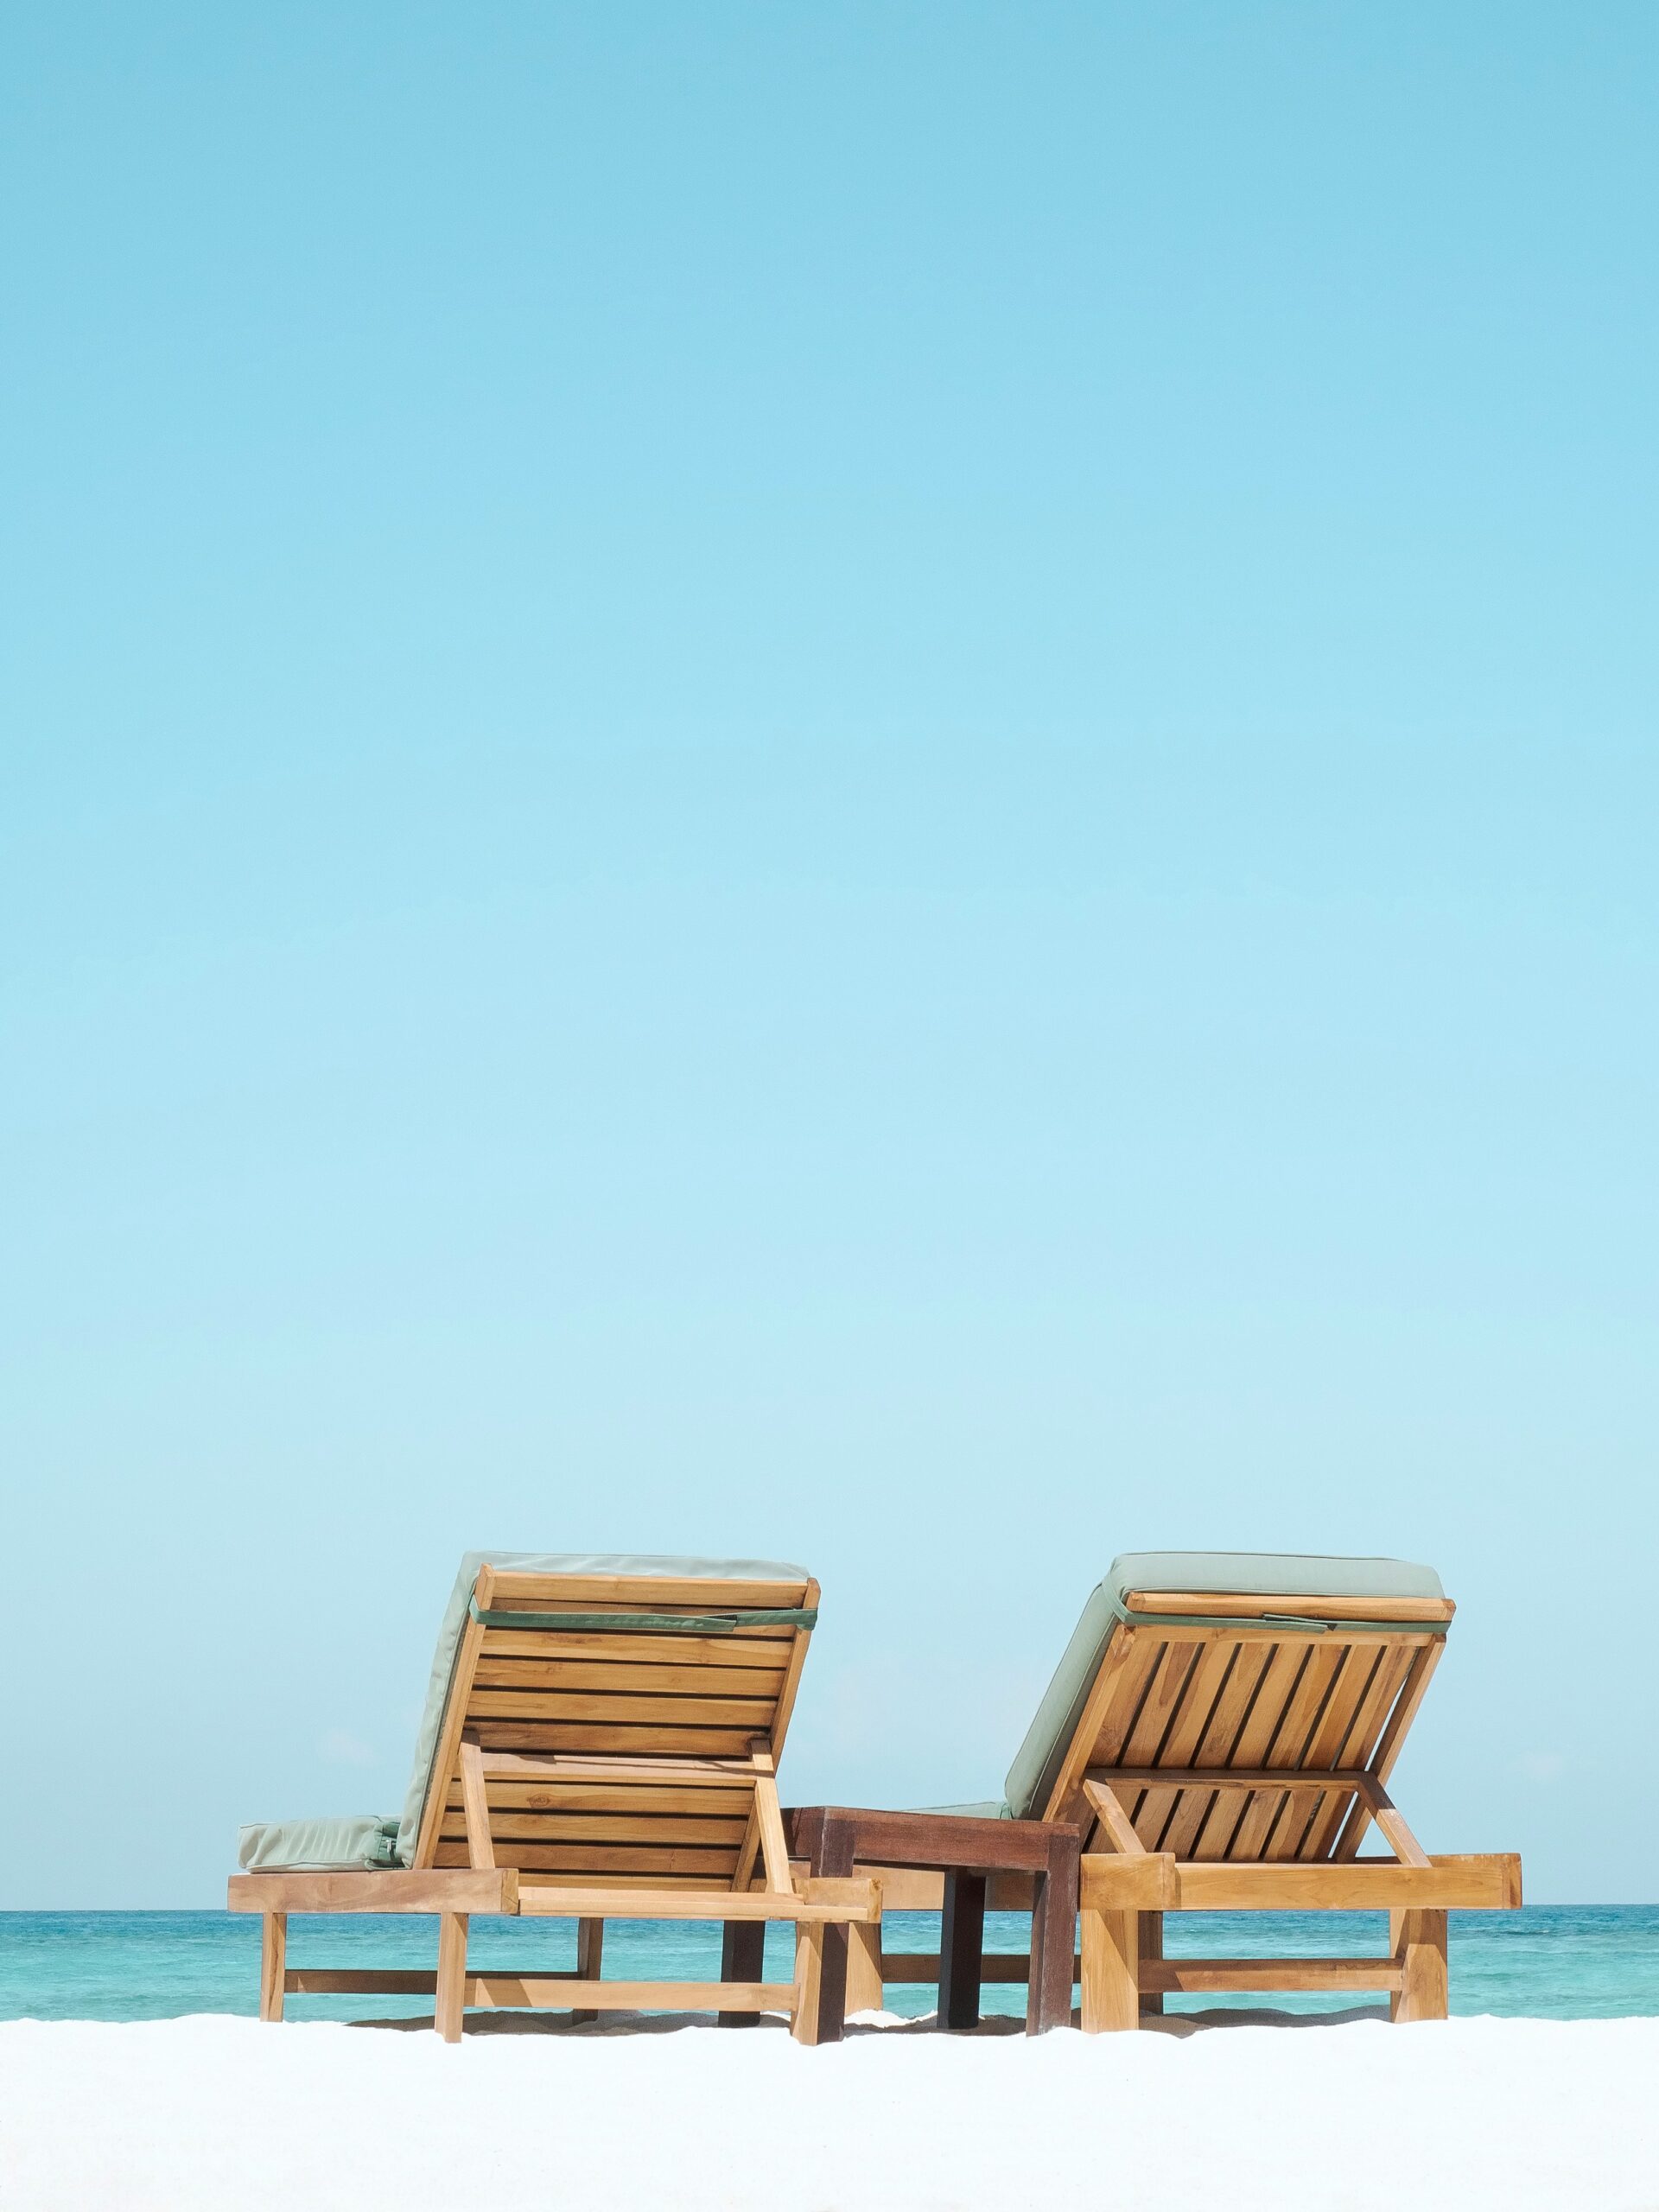 Deux chaises de plage au bord de l'océan